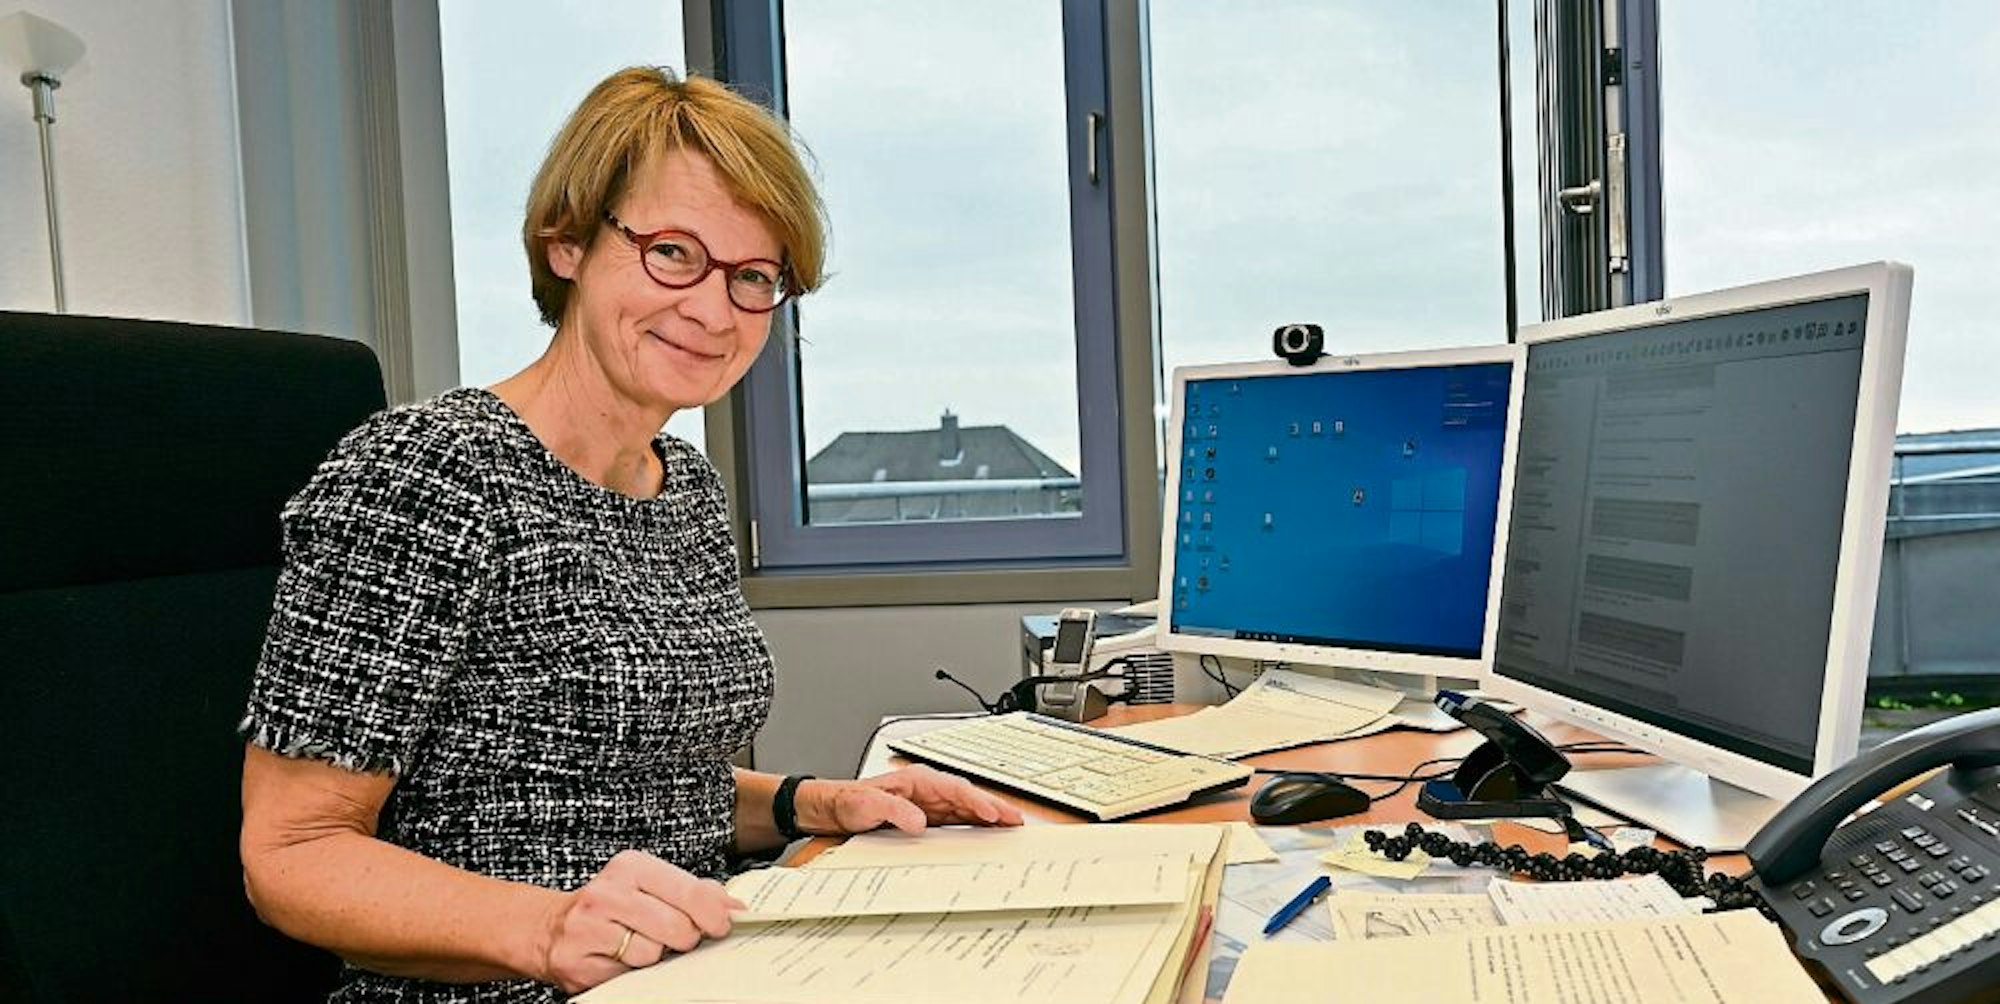 Sie führt das altehrwürdige Bensberger Amtsgericht ins Digital-Zeitalter: Johanna Saul-Krickeberg an ihrem Arbeitsplatz.